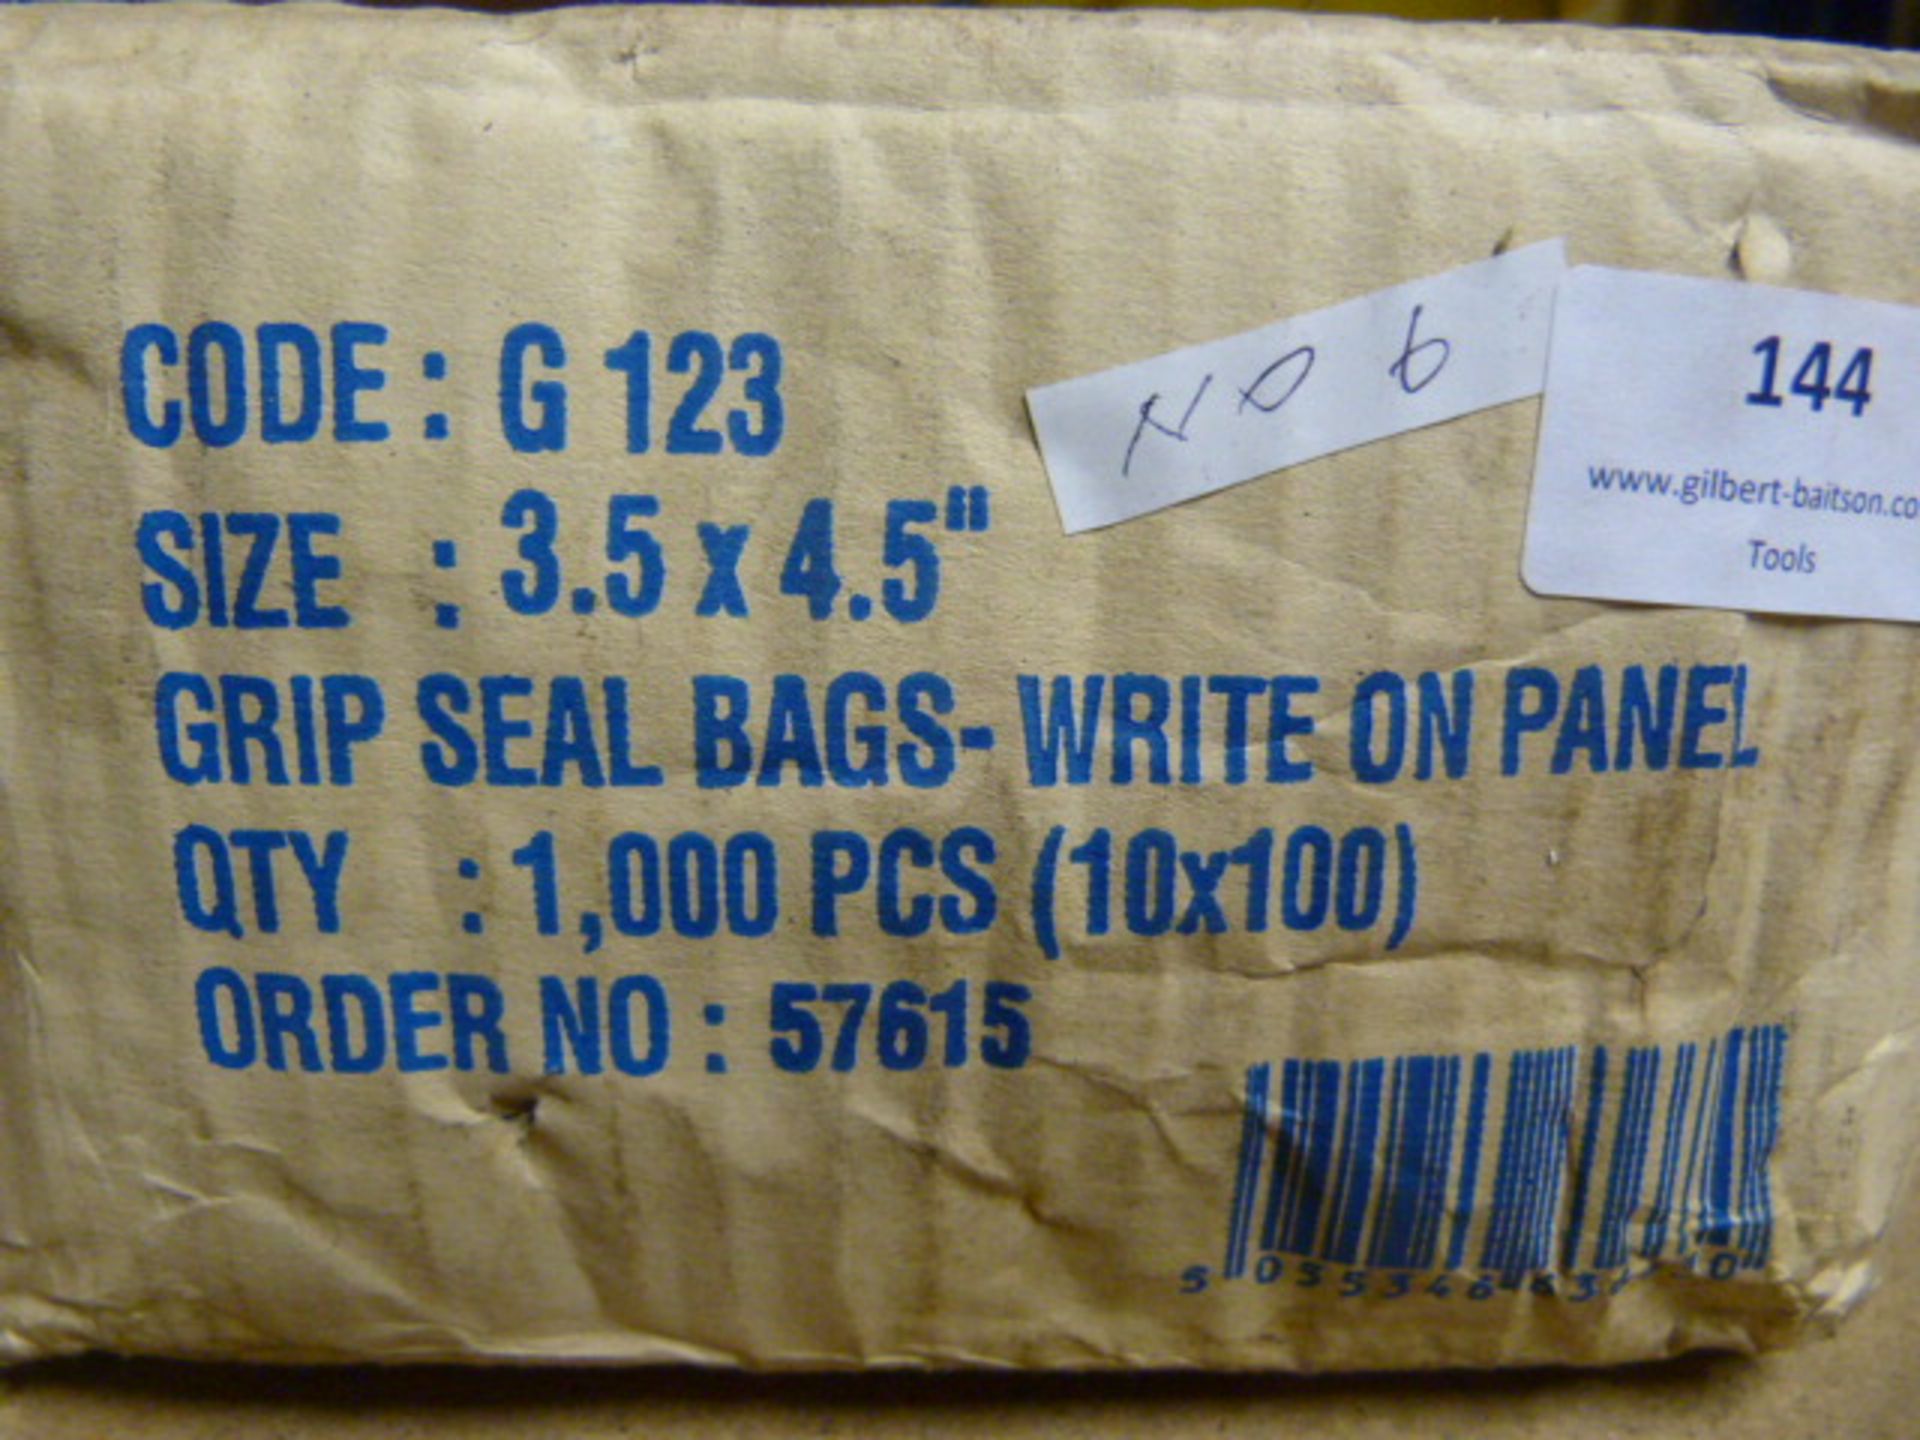 *Box of 1000 Grip Seal Bags